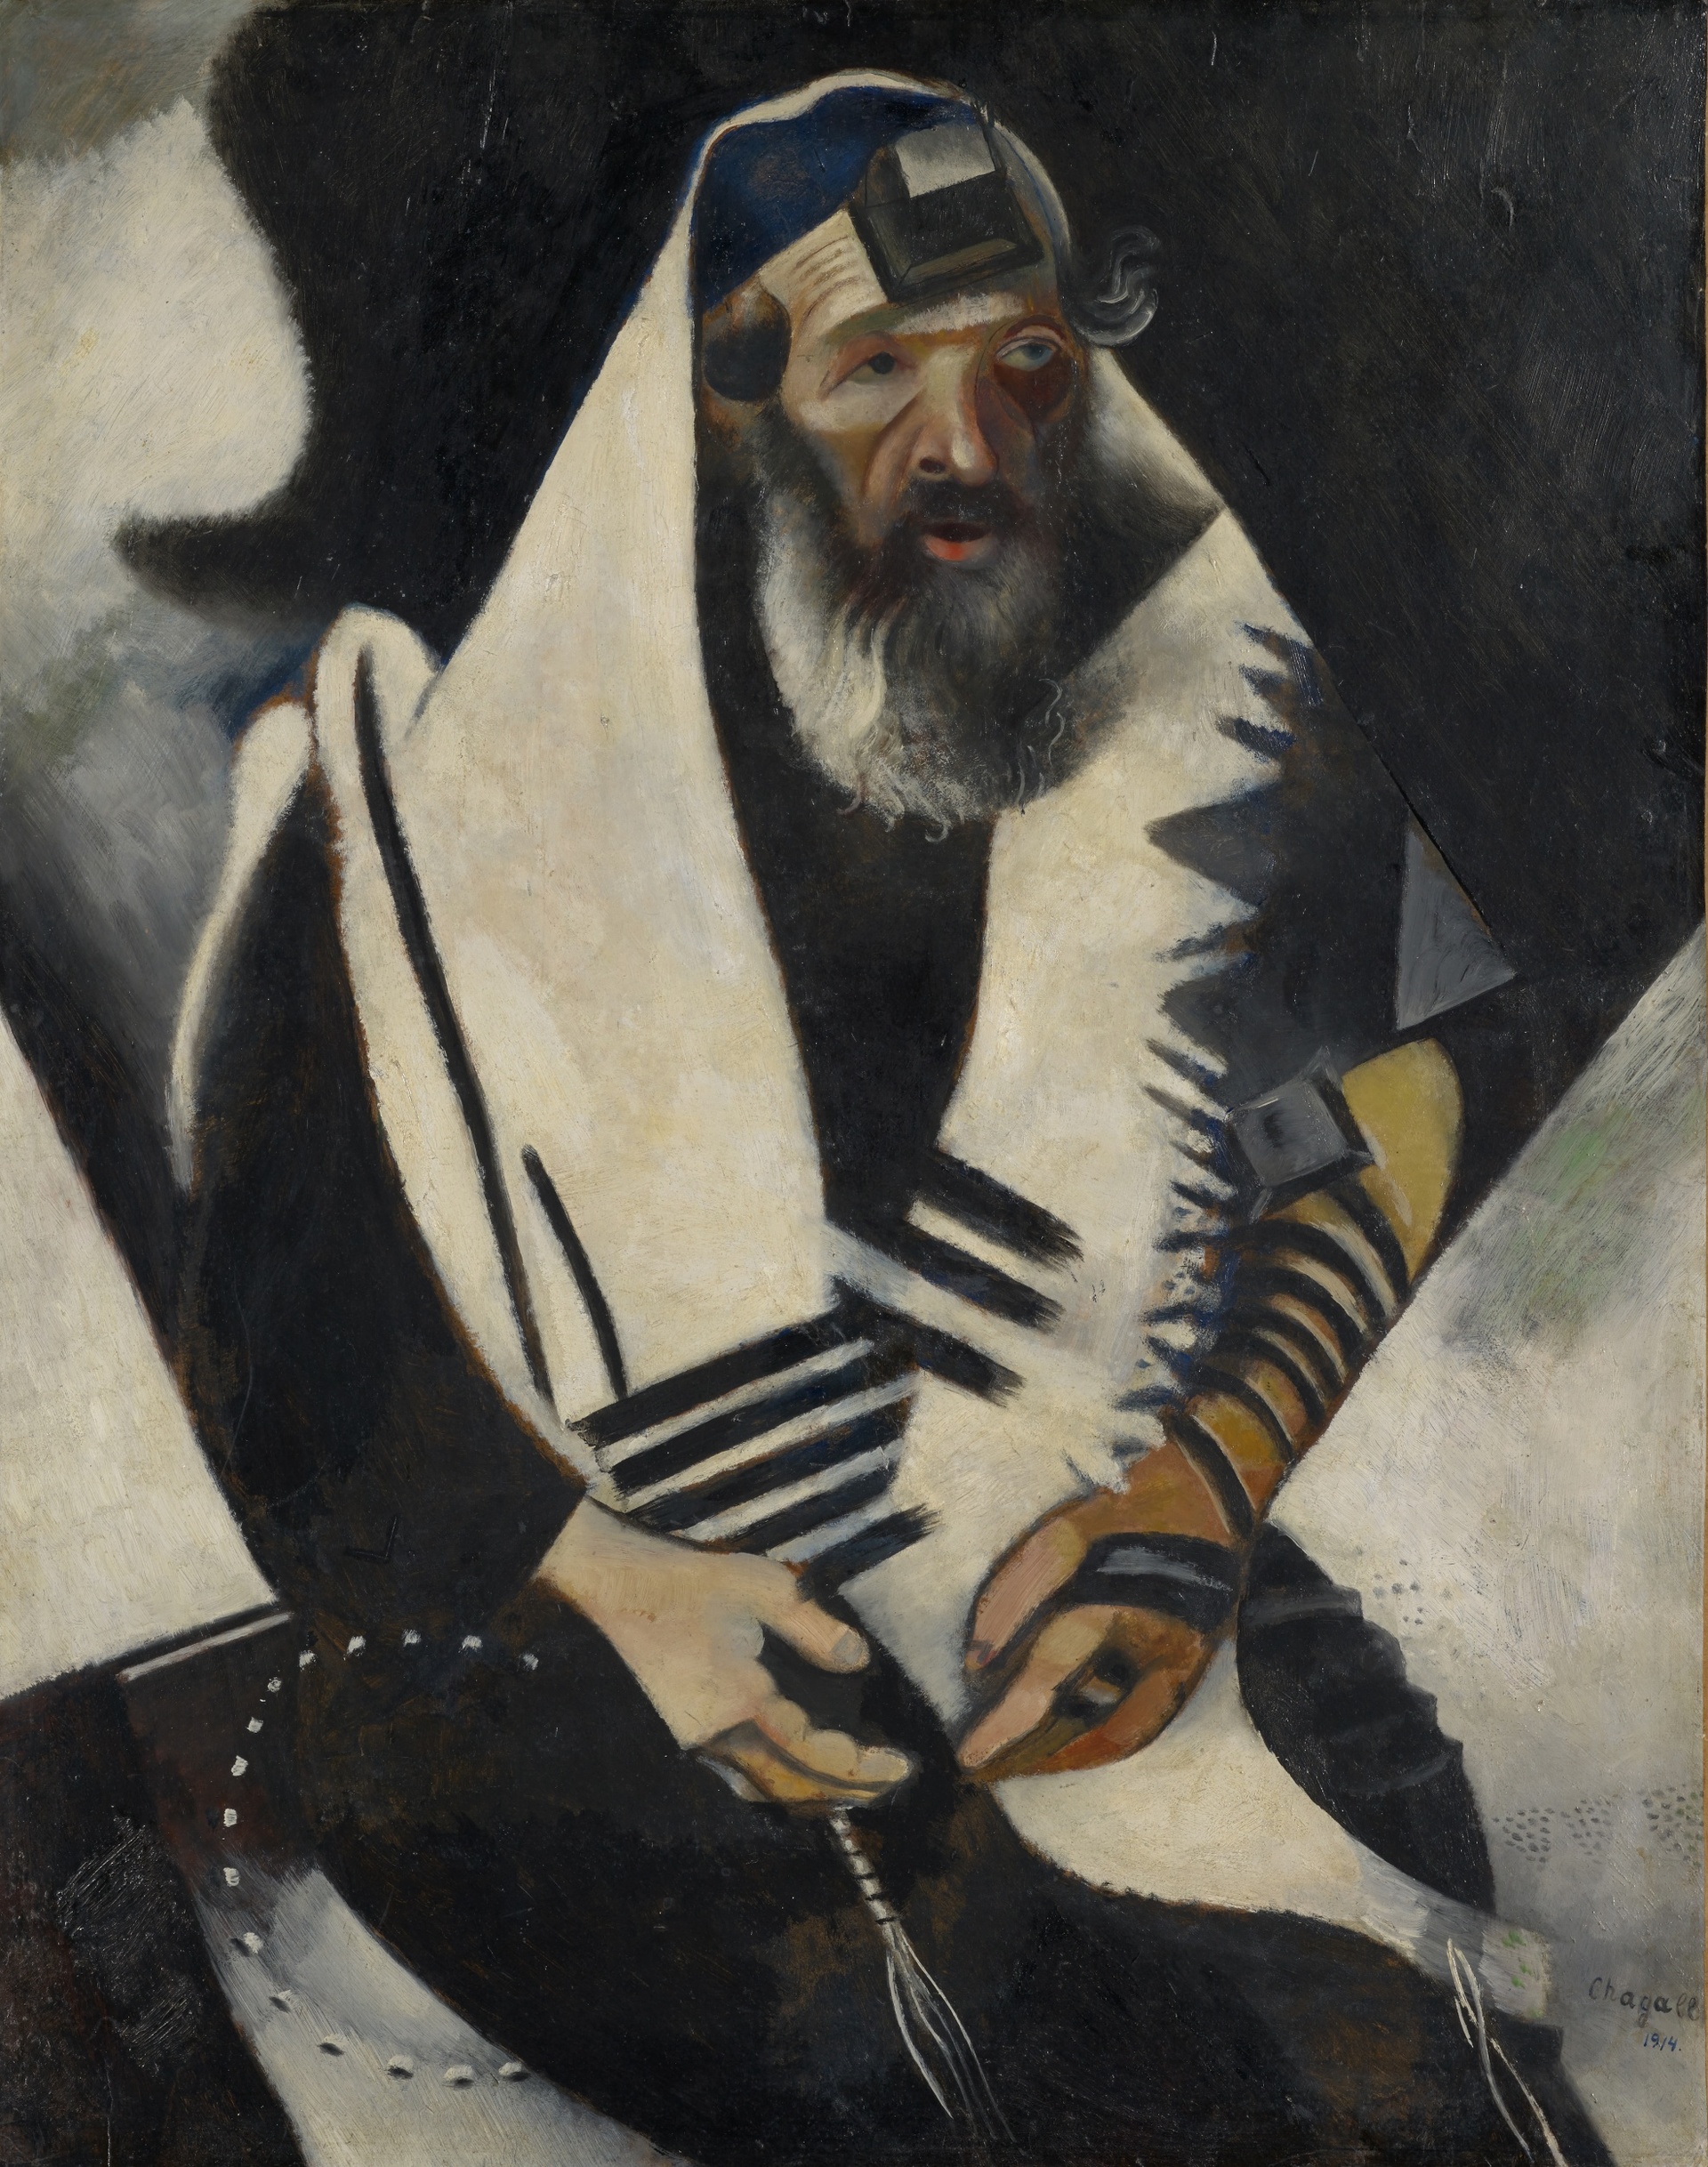 Marc Chagall, Der Jude in Schwarz-Weiss, 1914</br>
Stiftung Im Obersteg, Depositum im Kunstmuseum Basel